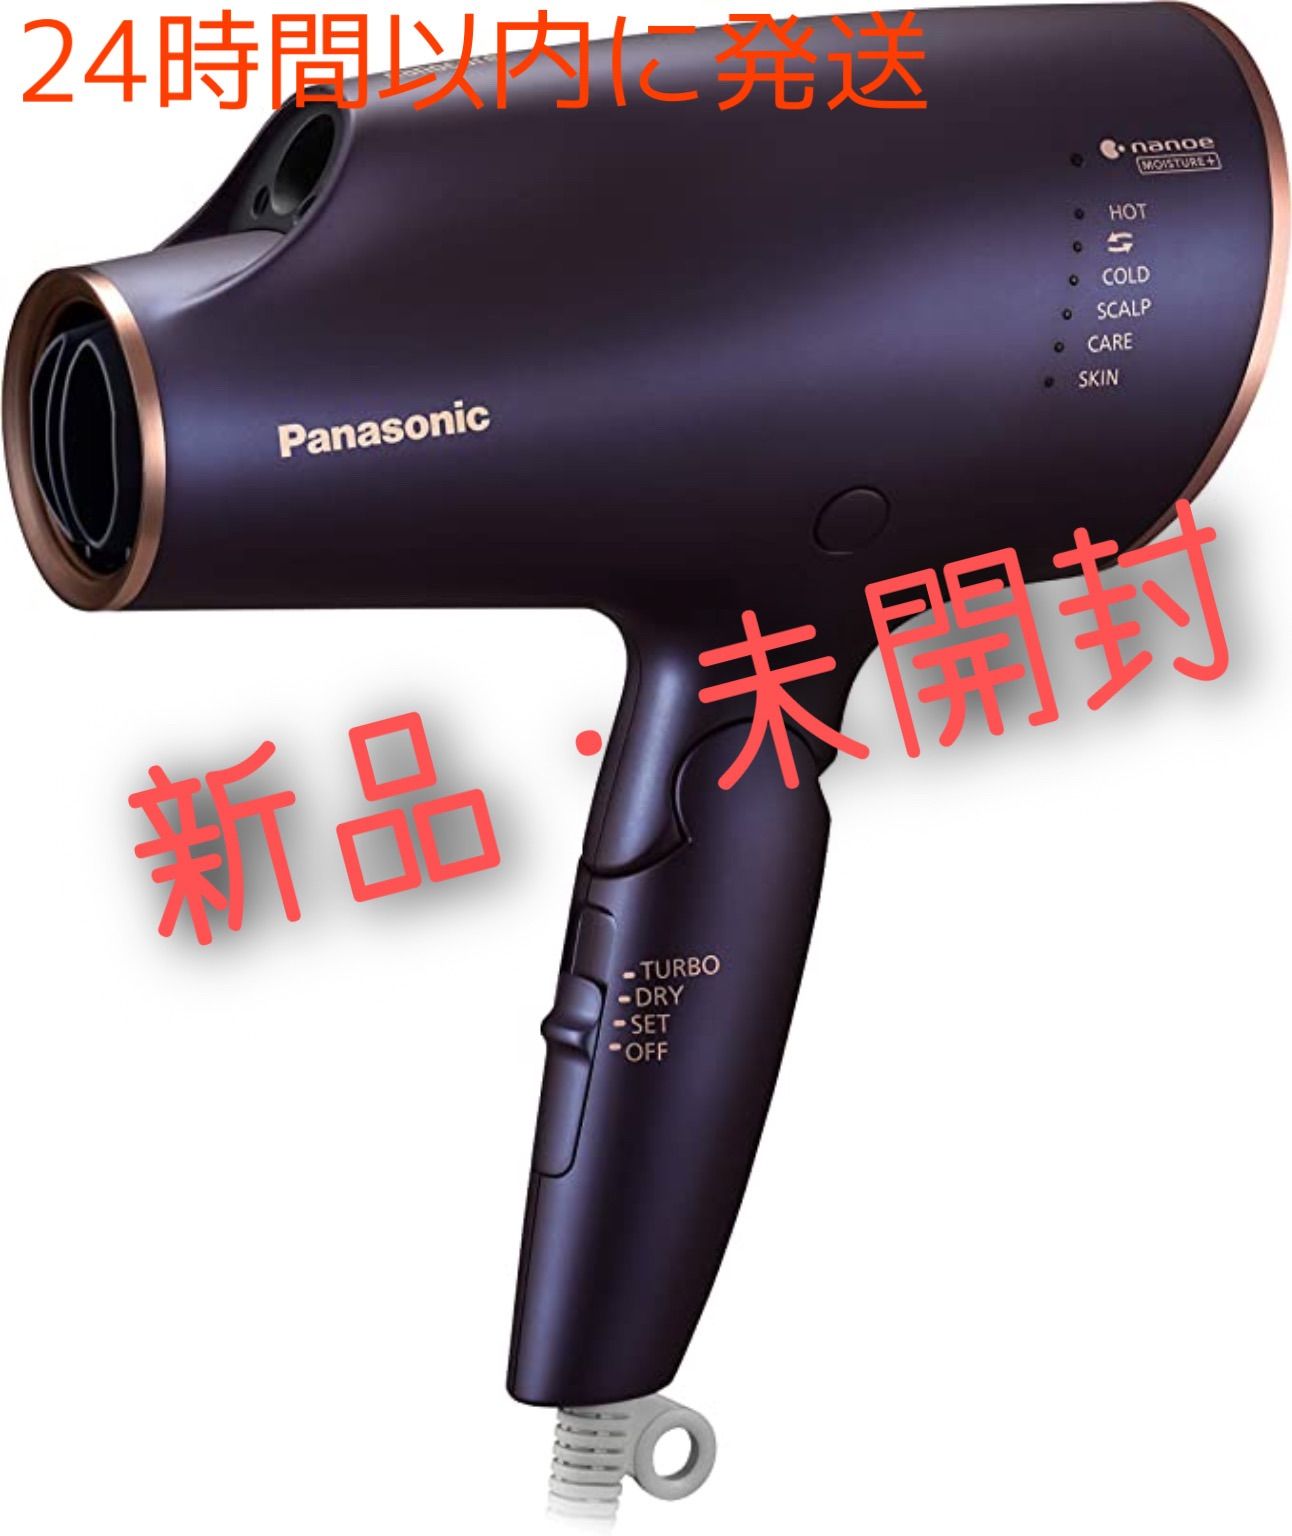 Panasonicドライヤー ナノケア ネイビー【新品・未開封】 - メルカリ